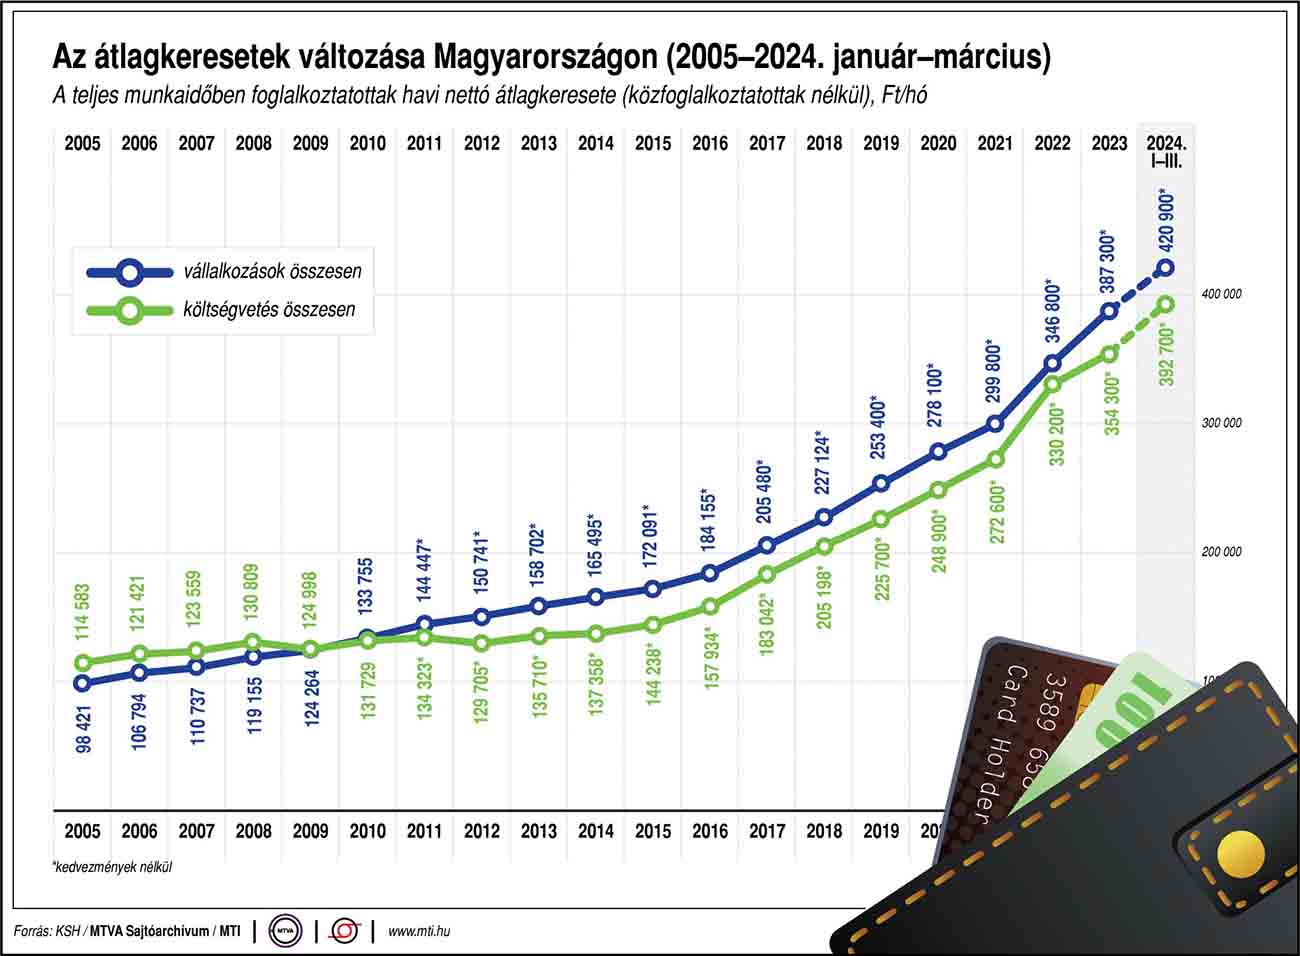 Az átlagkeresetek változása Magyarországon